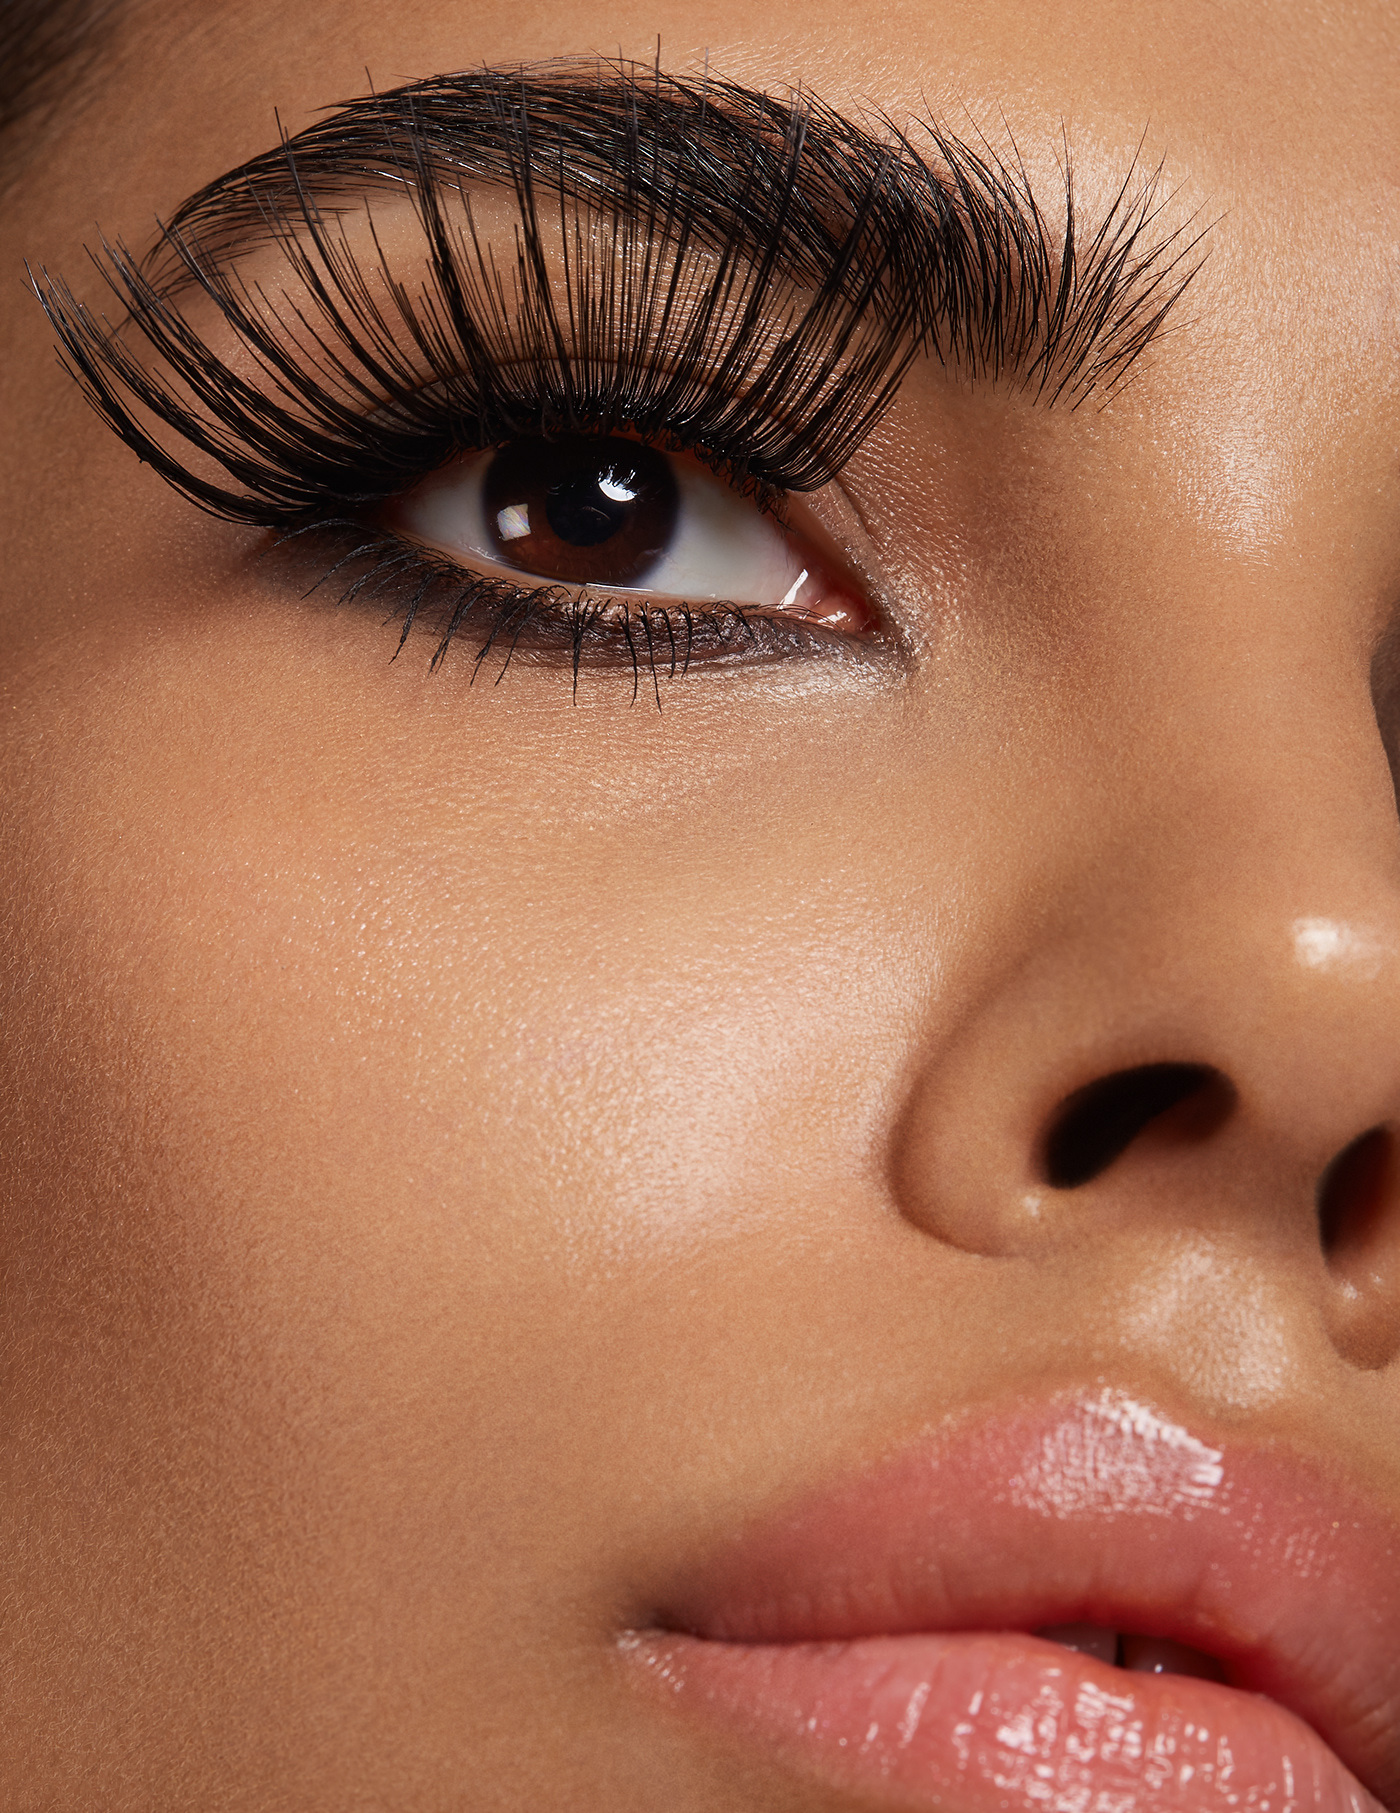 skin skincare skin care eye eyes Eyelashes lashes beauty editorial